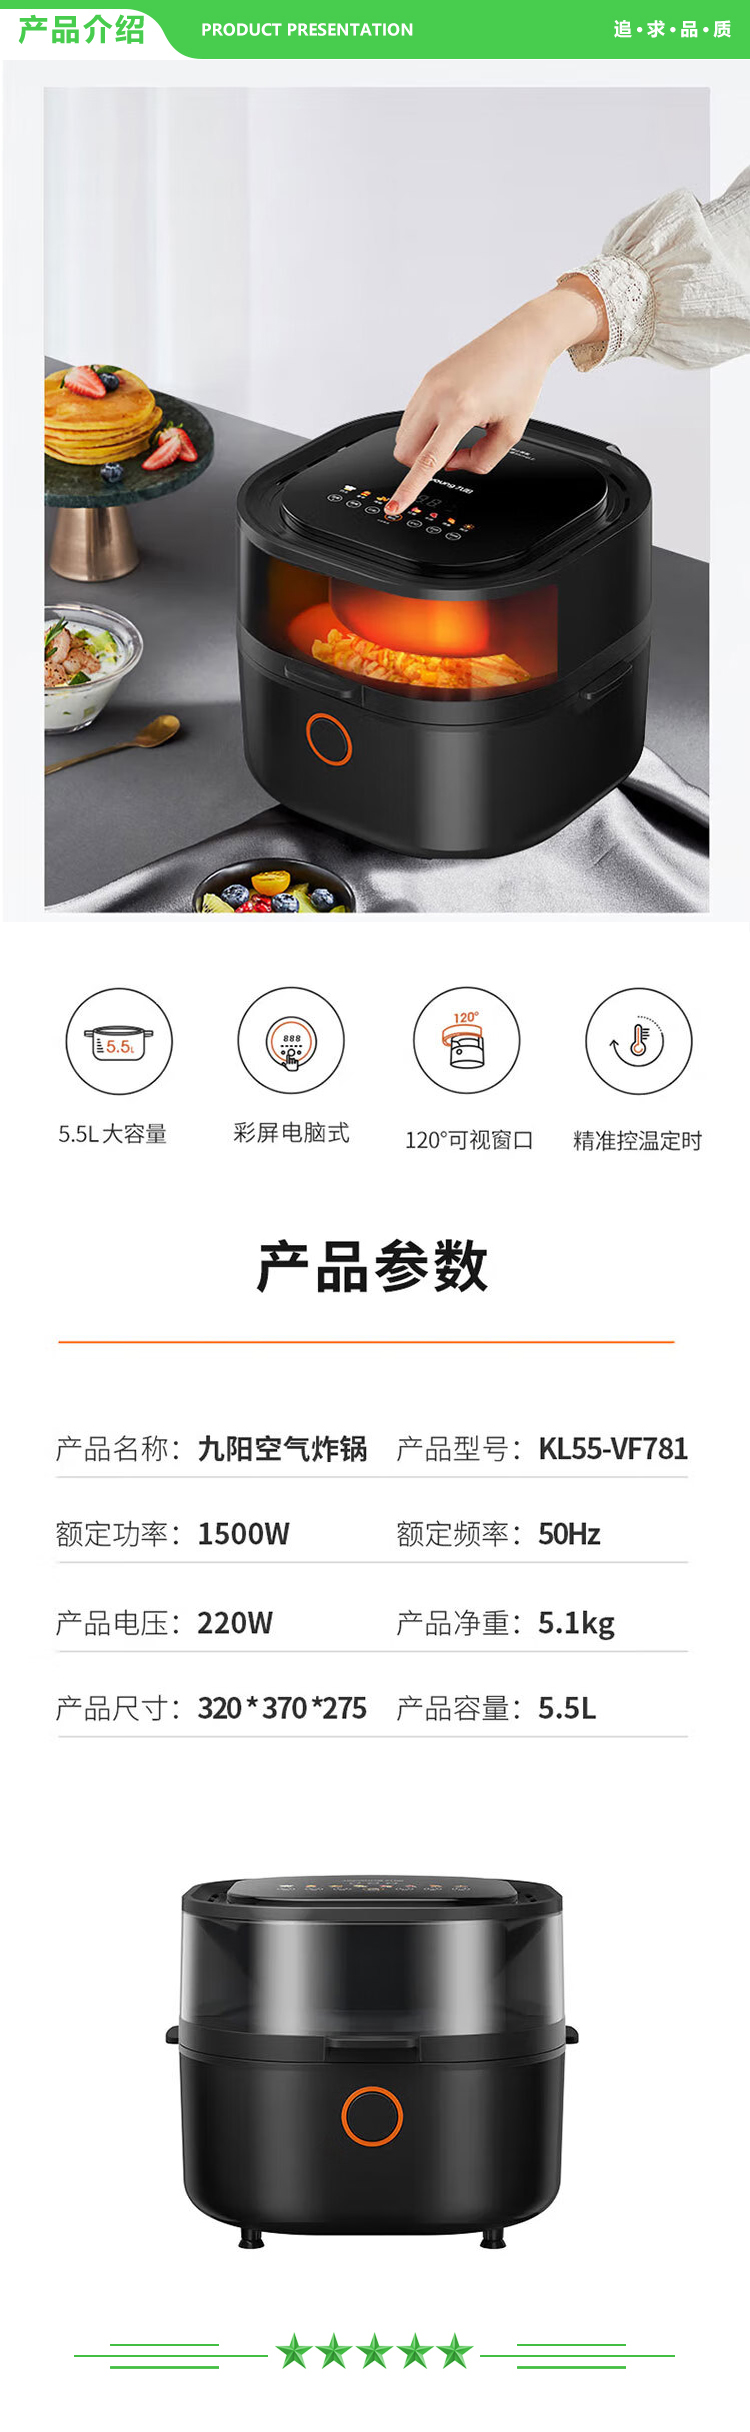 九阳 Joyoung KL55-VF781 空气炸锅 5.5L大容量家用多功能彩屏触控可视窗口电炸锅炸薯条机 智能款 黑色.jpg